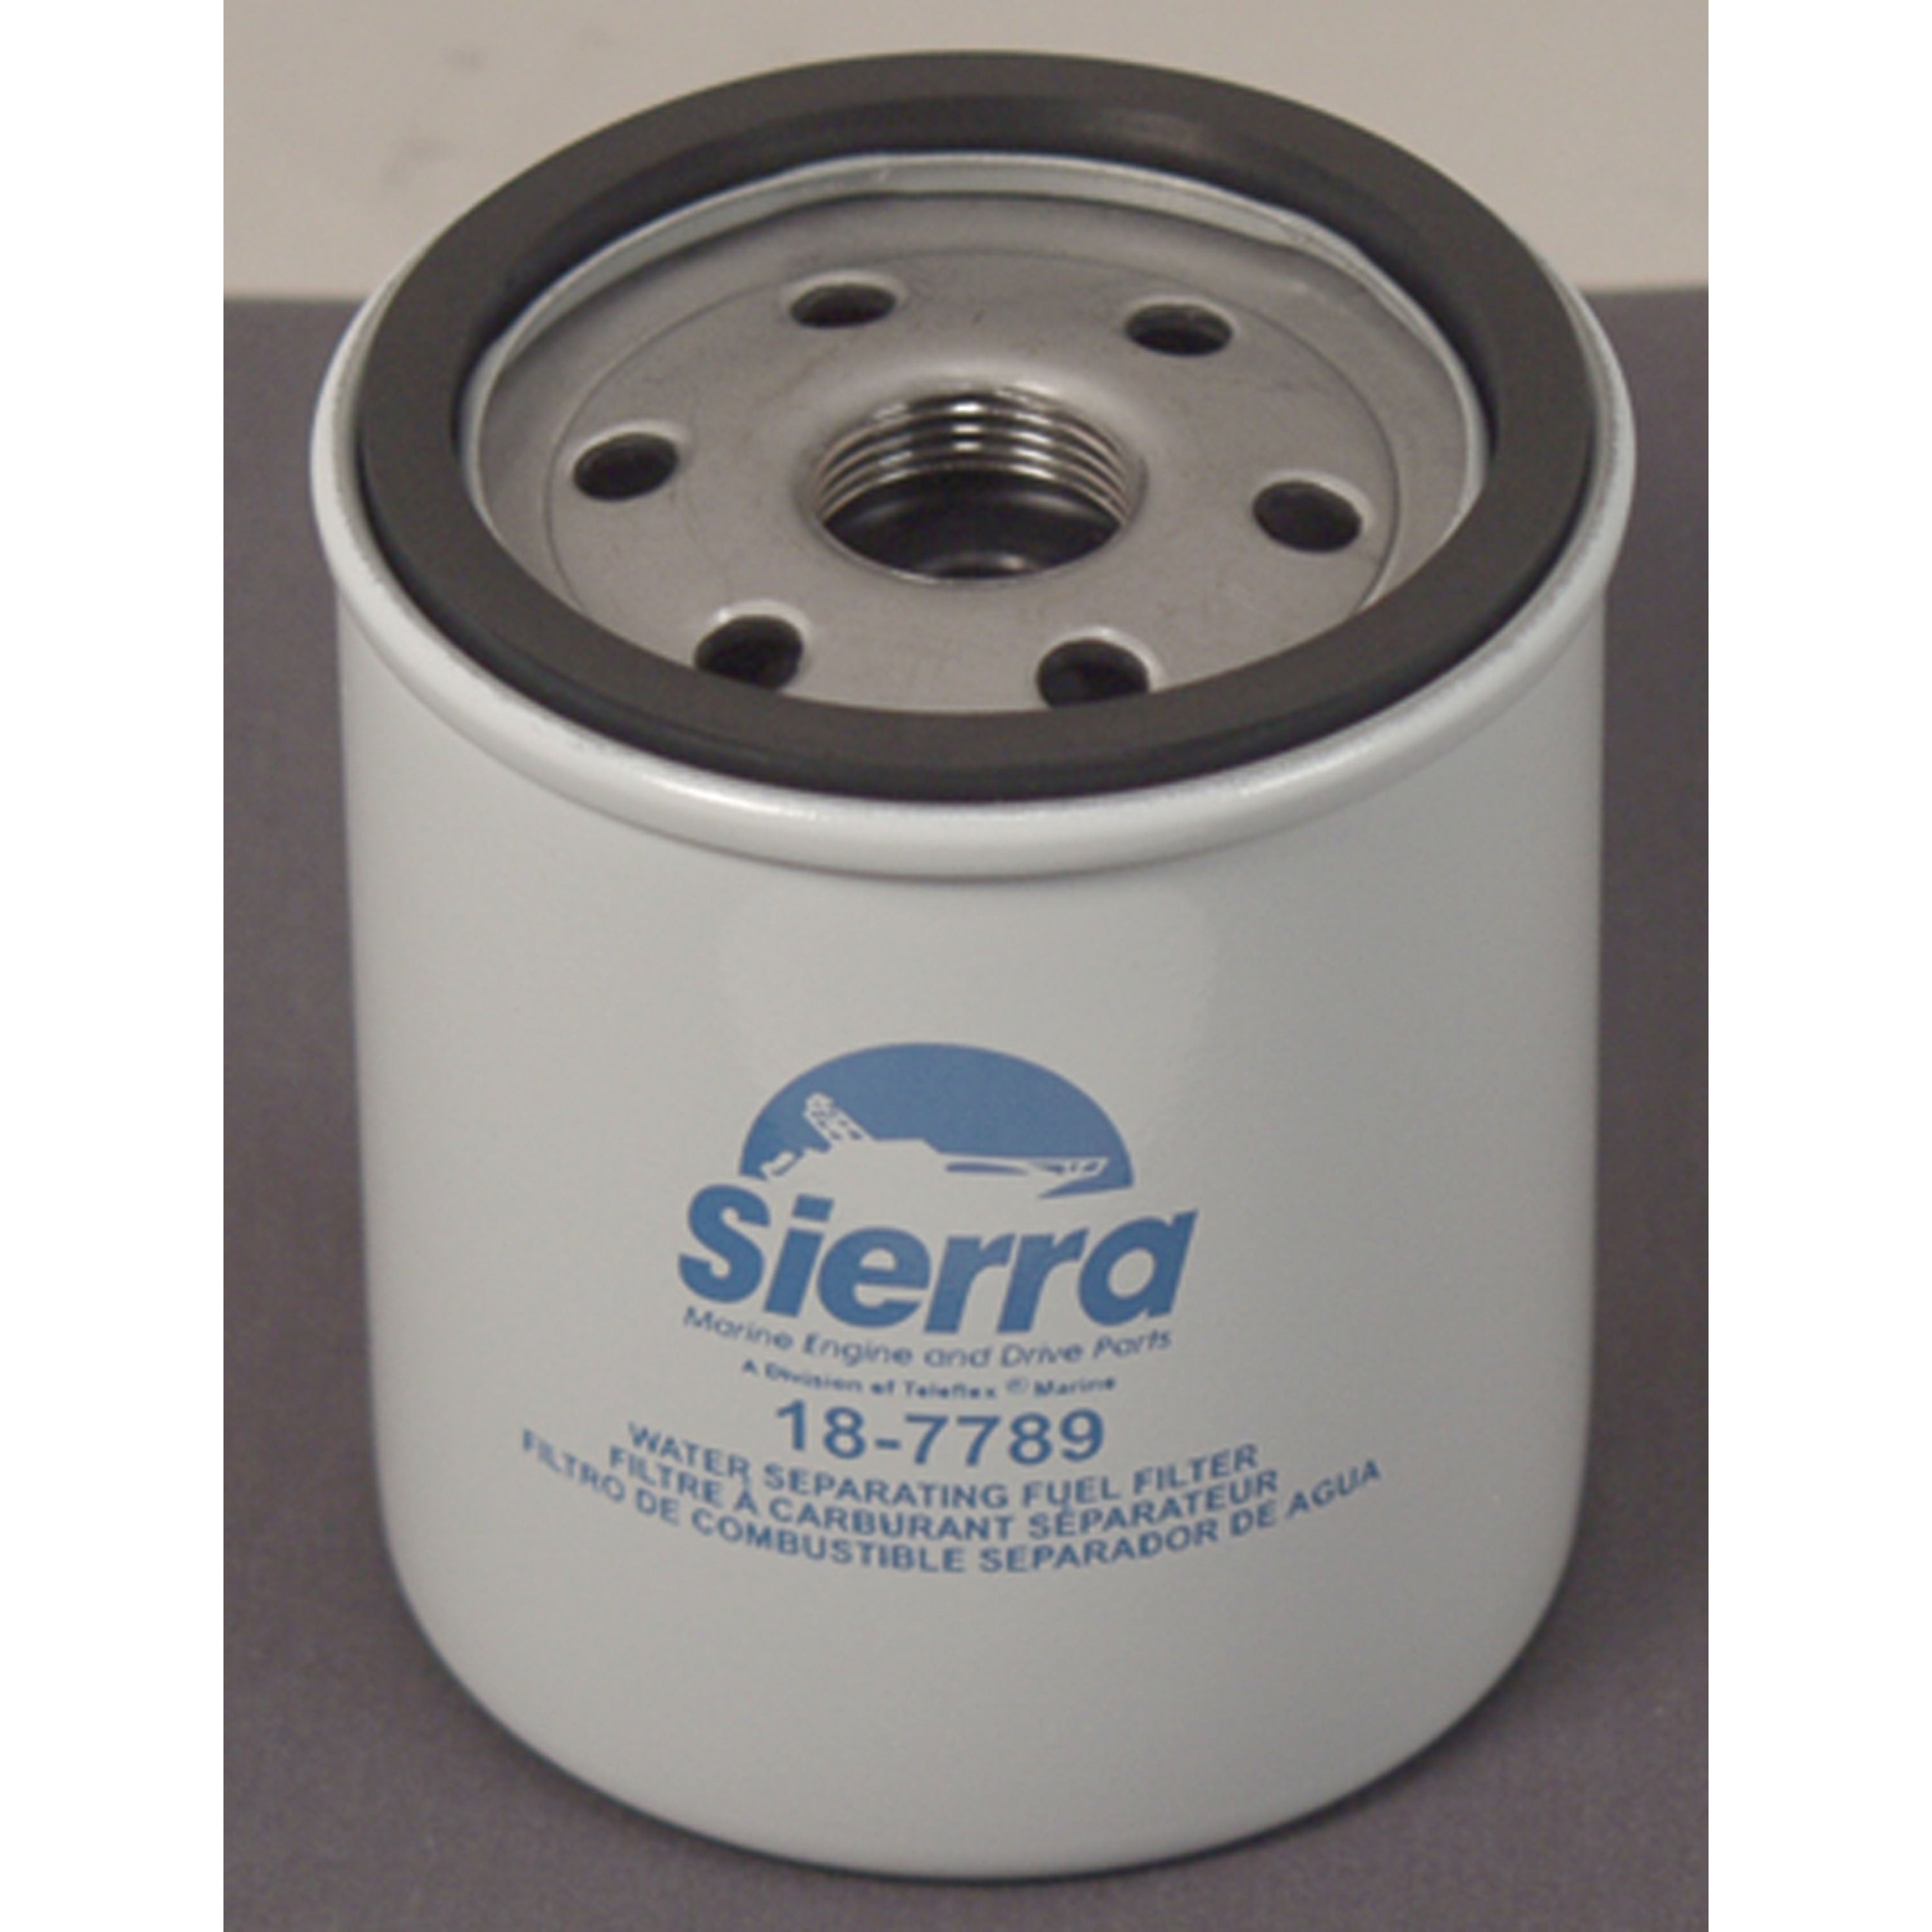 Sierra 18-7789 Fuel Filter - Cobra Efi